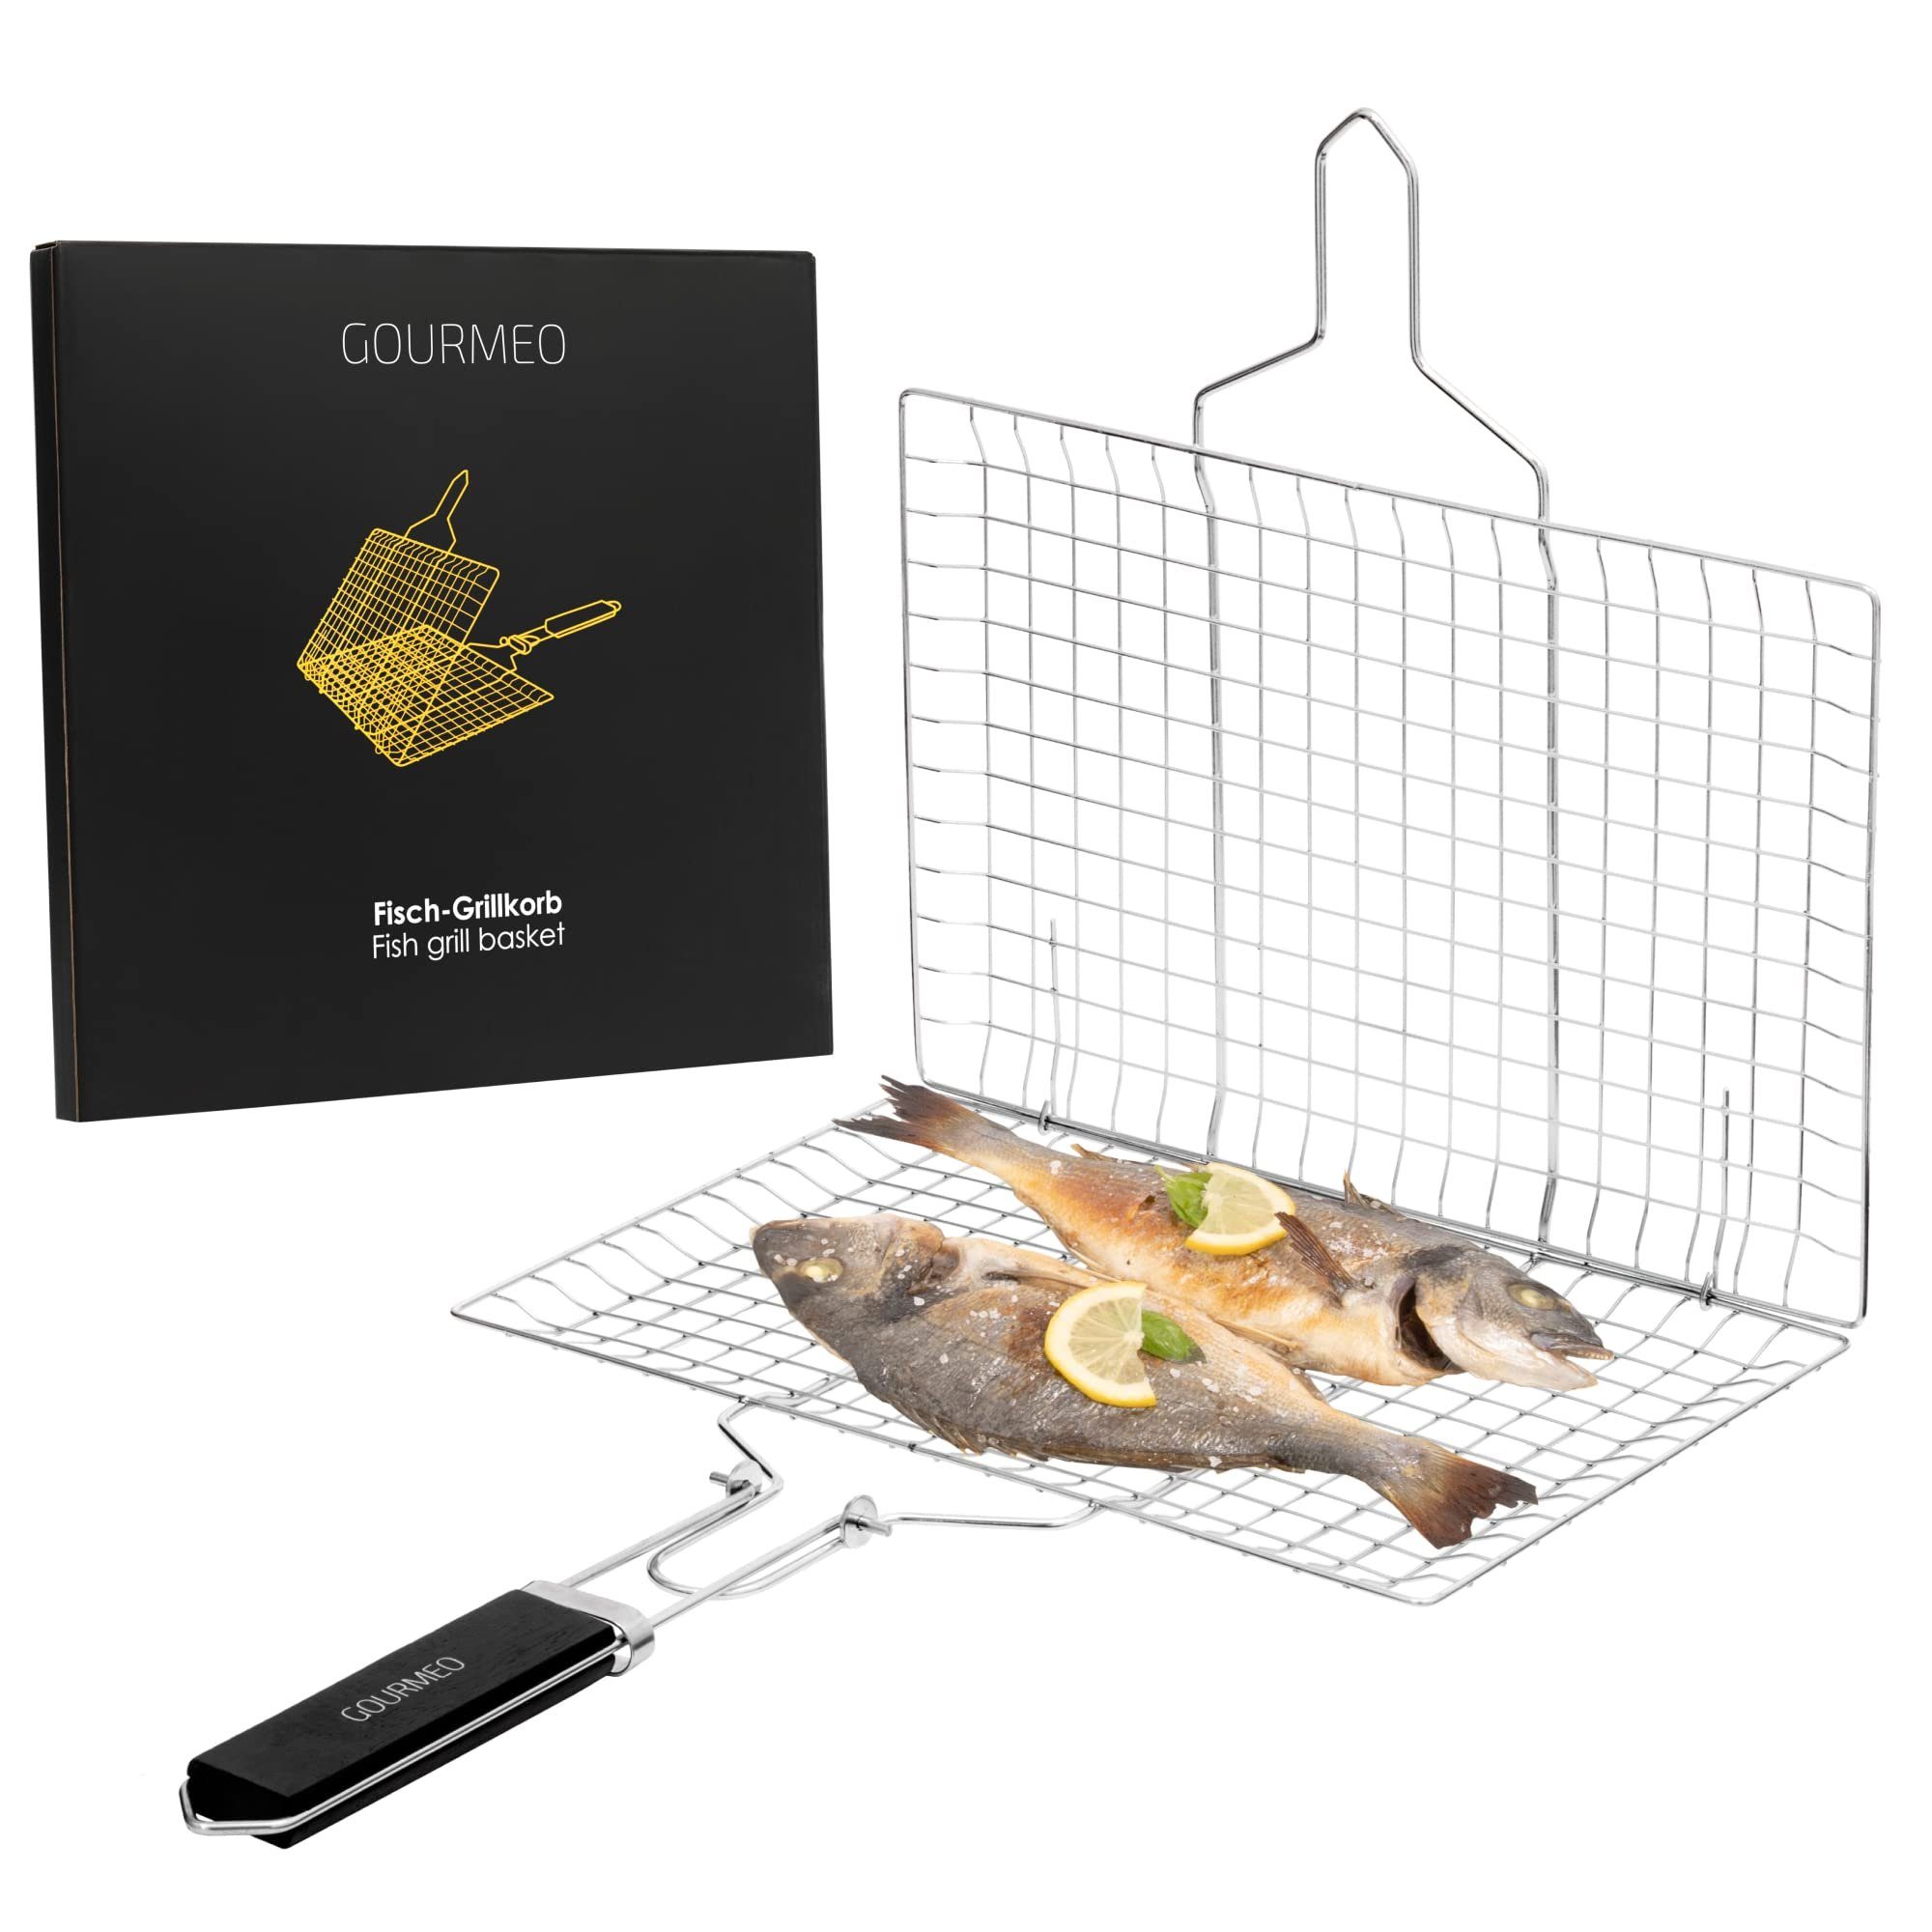 GOURMEO Grillplatte Grillkorb mit Holzgriff und Bürste für Fisch, Fleisch und Gemüse, Grillkorb für Fisch, Fleisch und Gemüse mit Holzgriff und Bürste